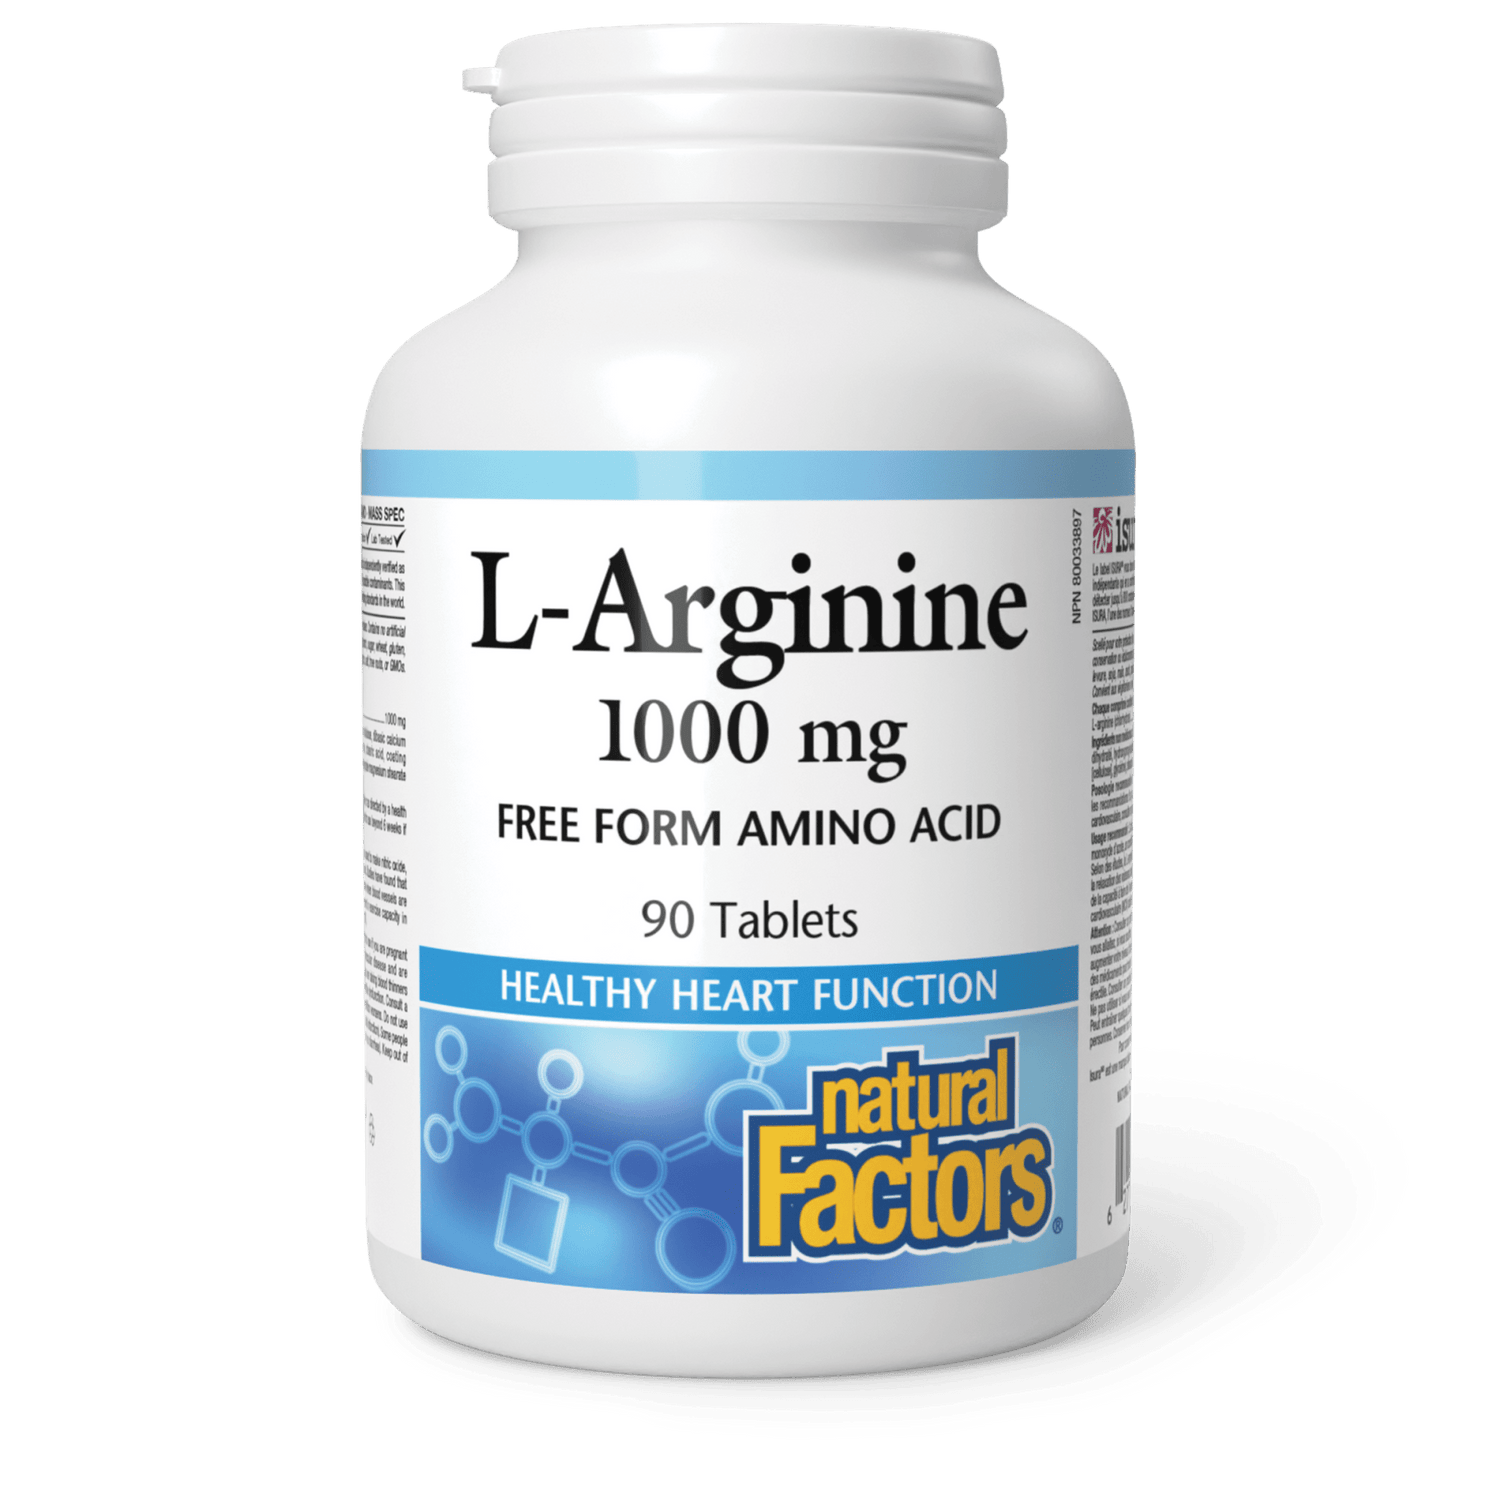 L-Arginine 1000 mg, Natural Factors|v|image|2802